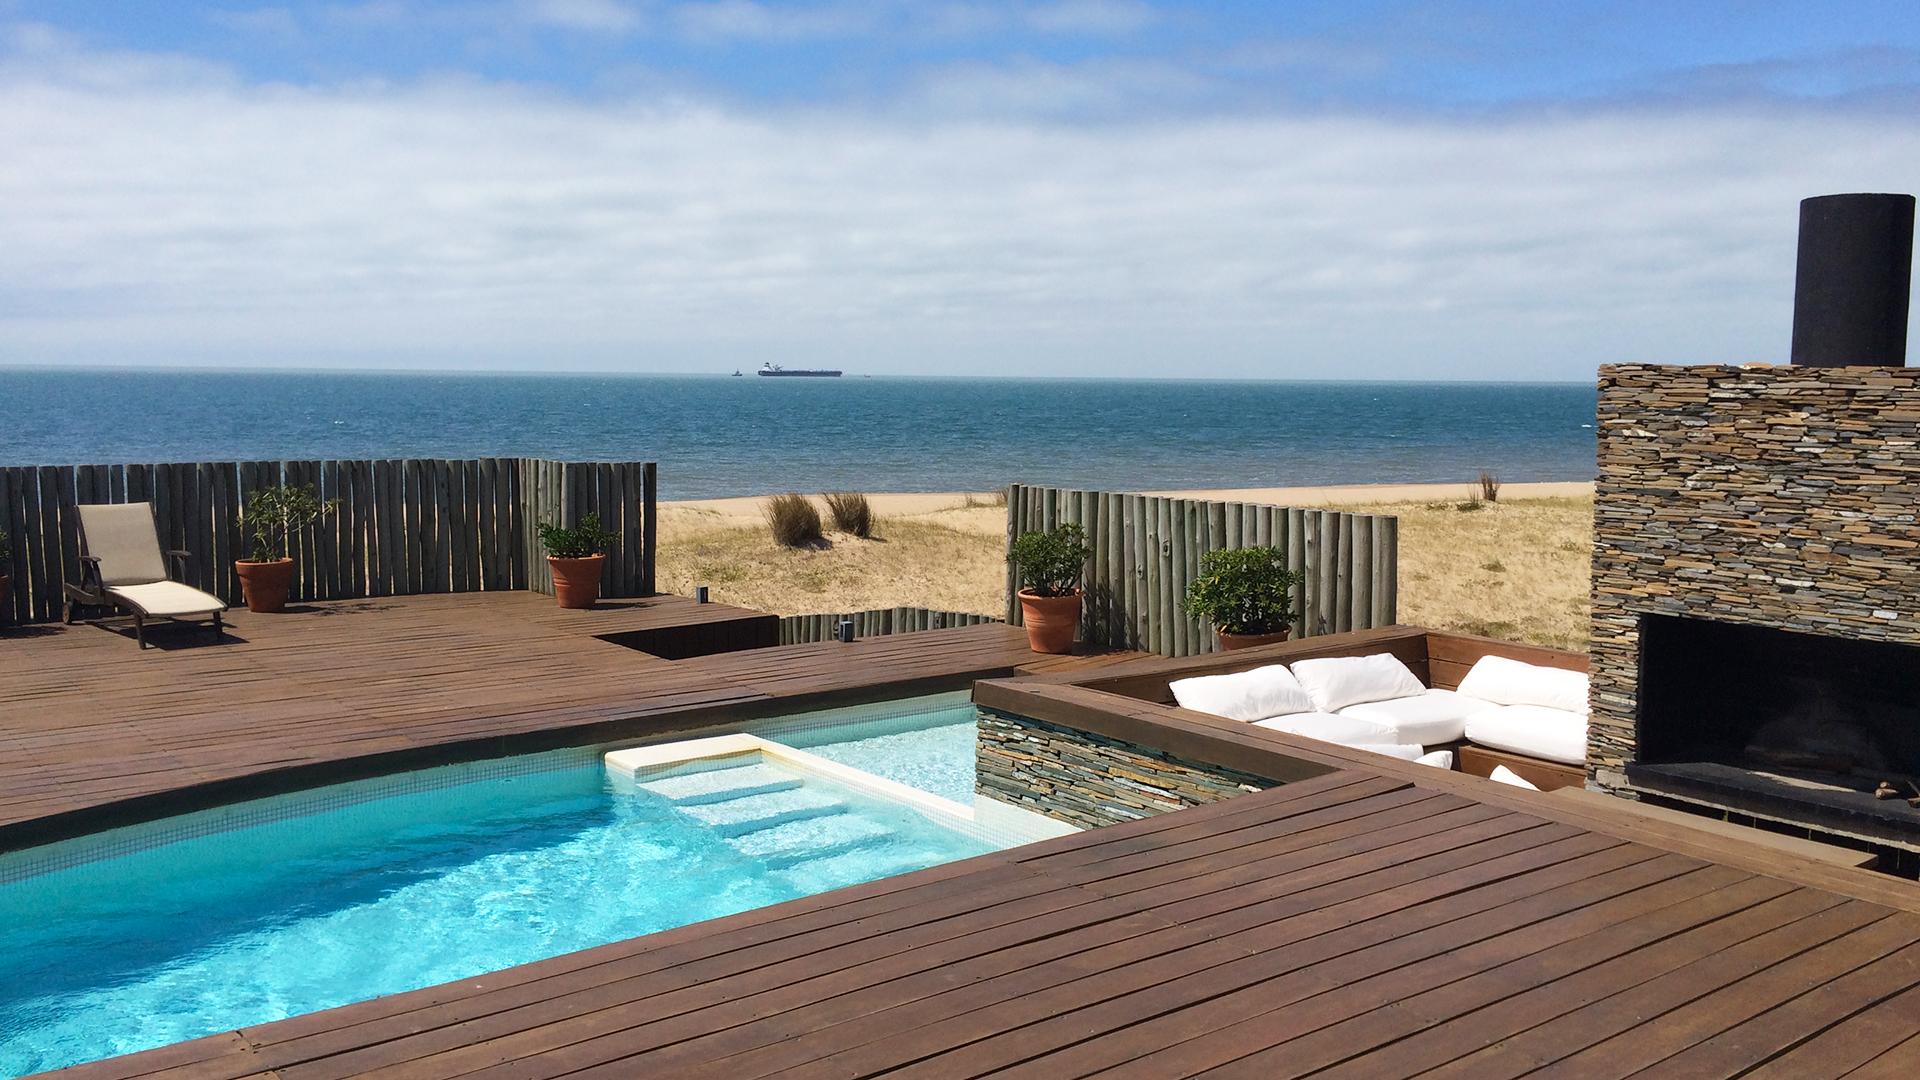 Superb Beachfront Villa located in Jose Ignacio, Punta del Este, Uruguay, listed by Curiocity Villas.